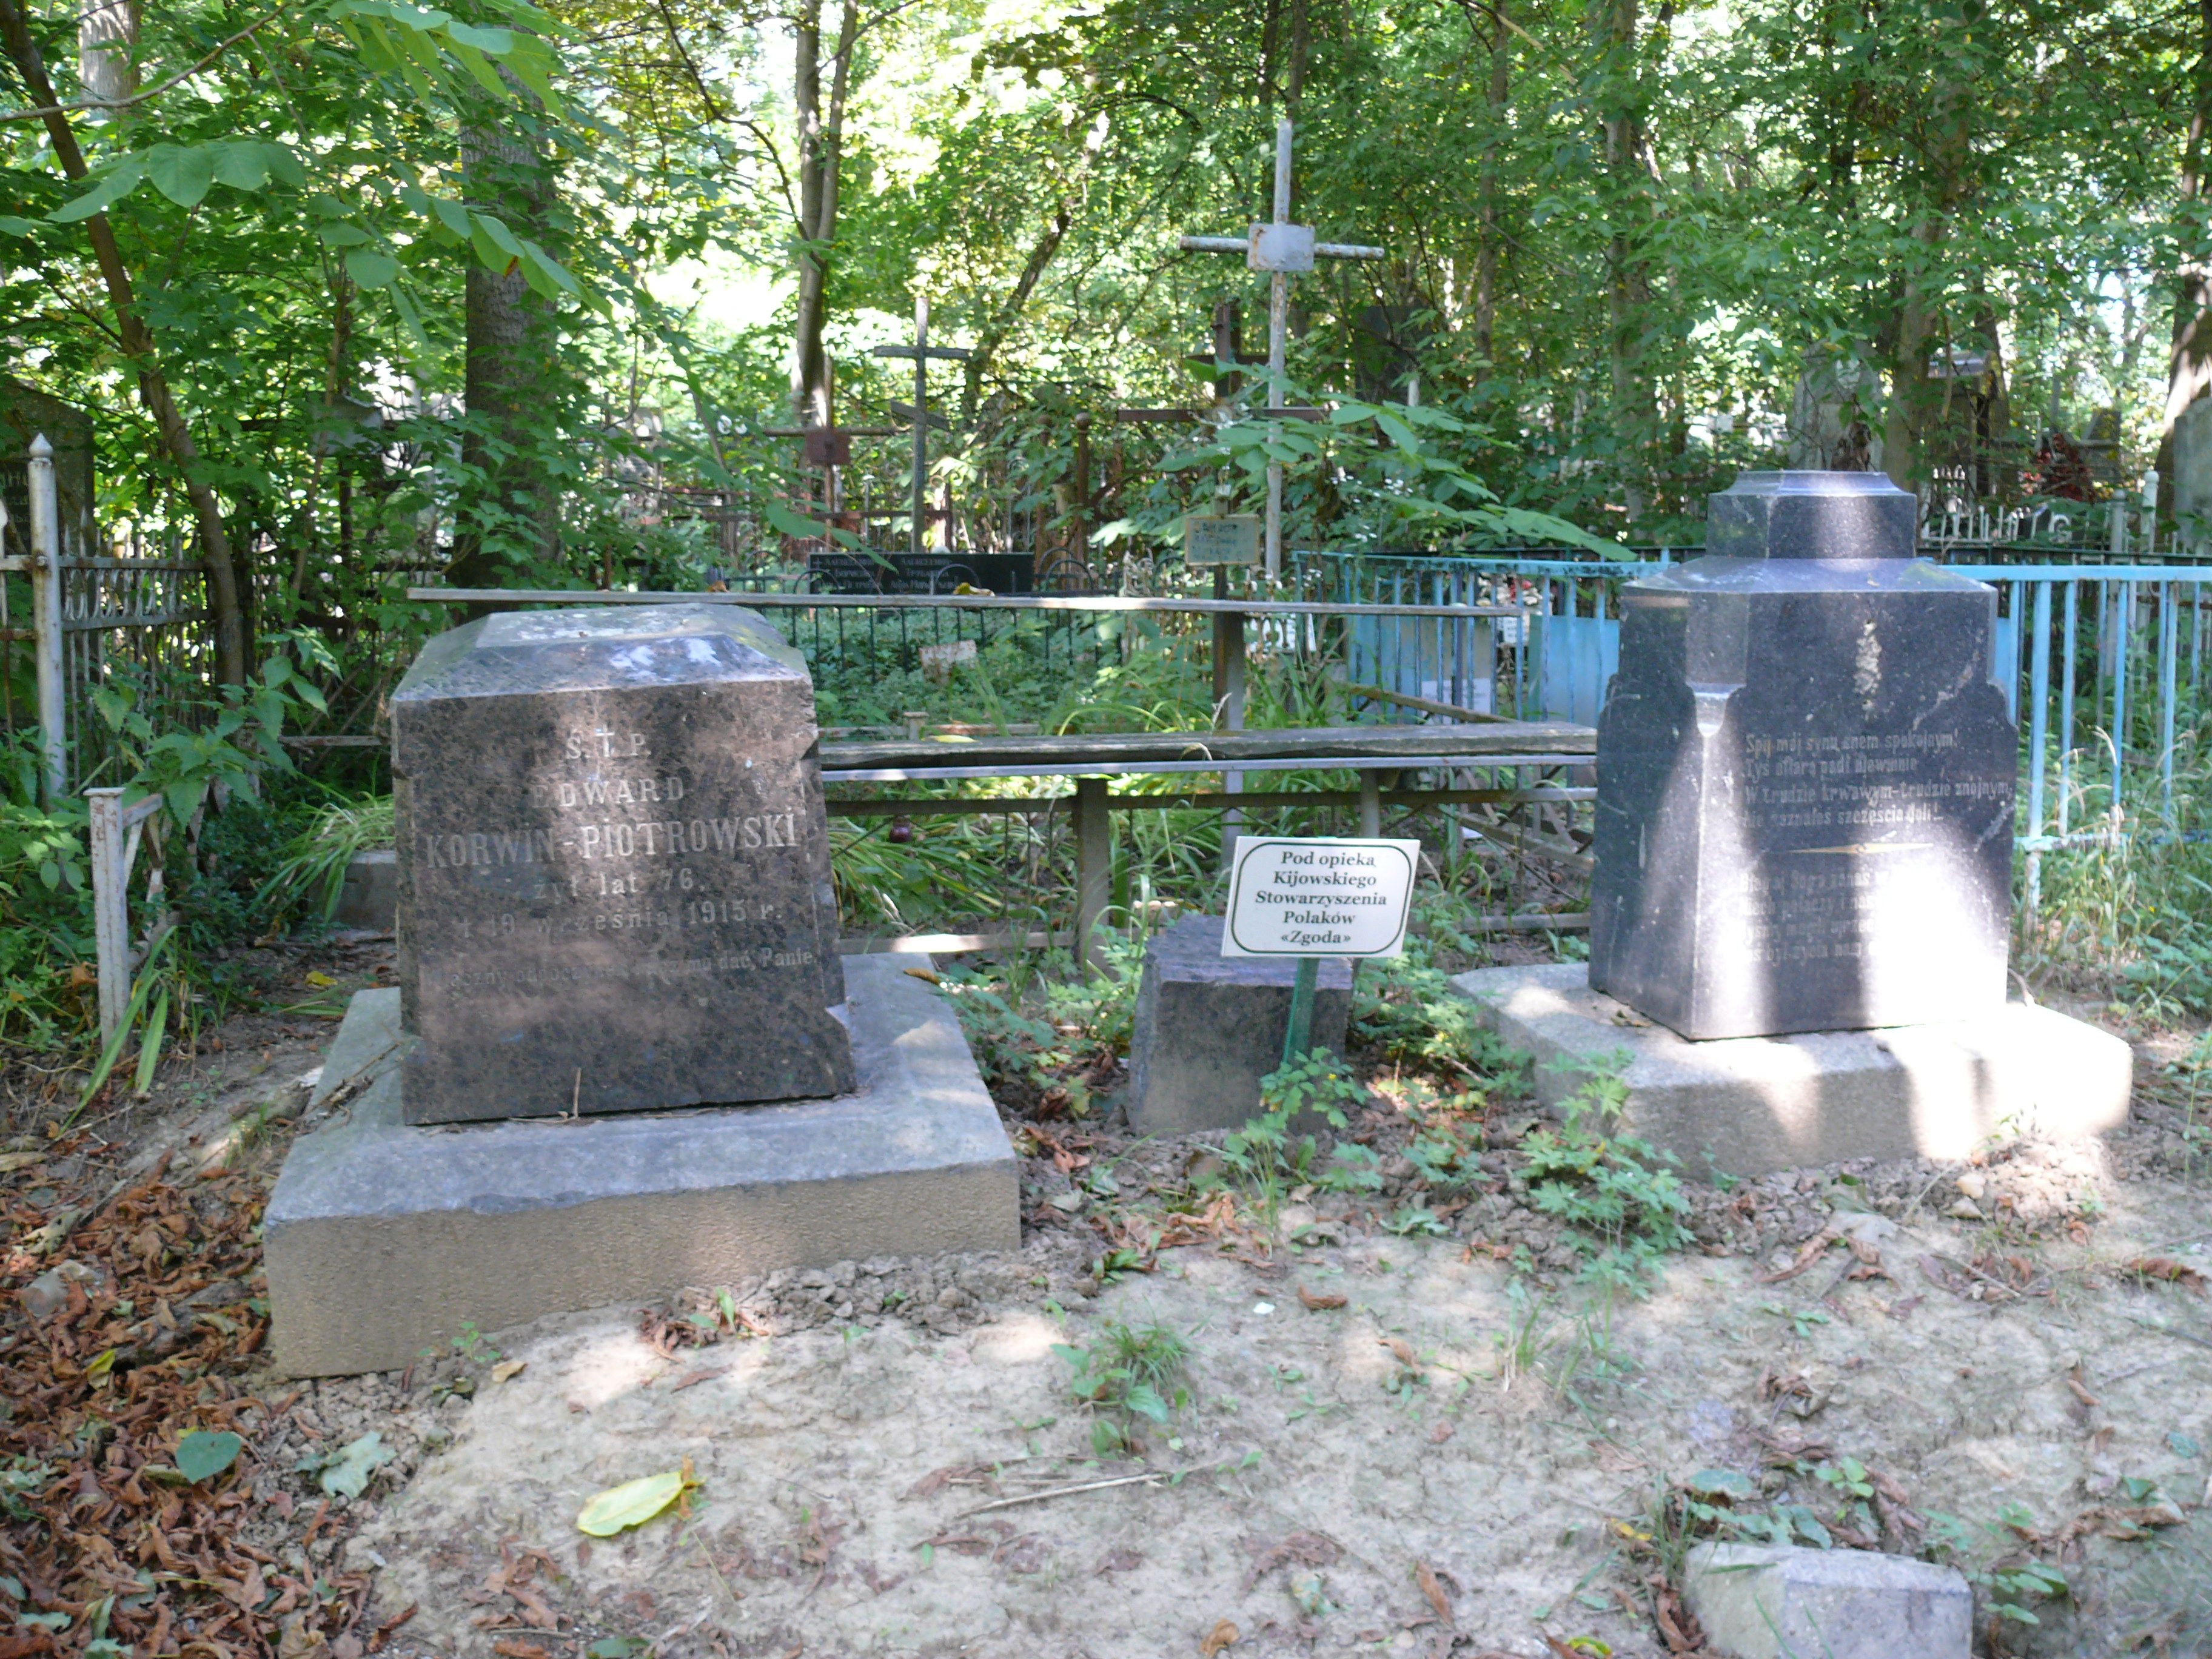 Tombstone of Edward Korwin-Piotrowski